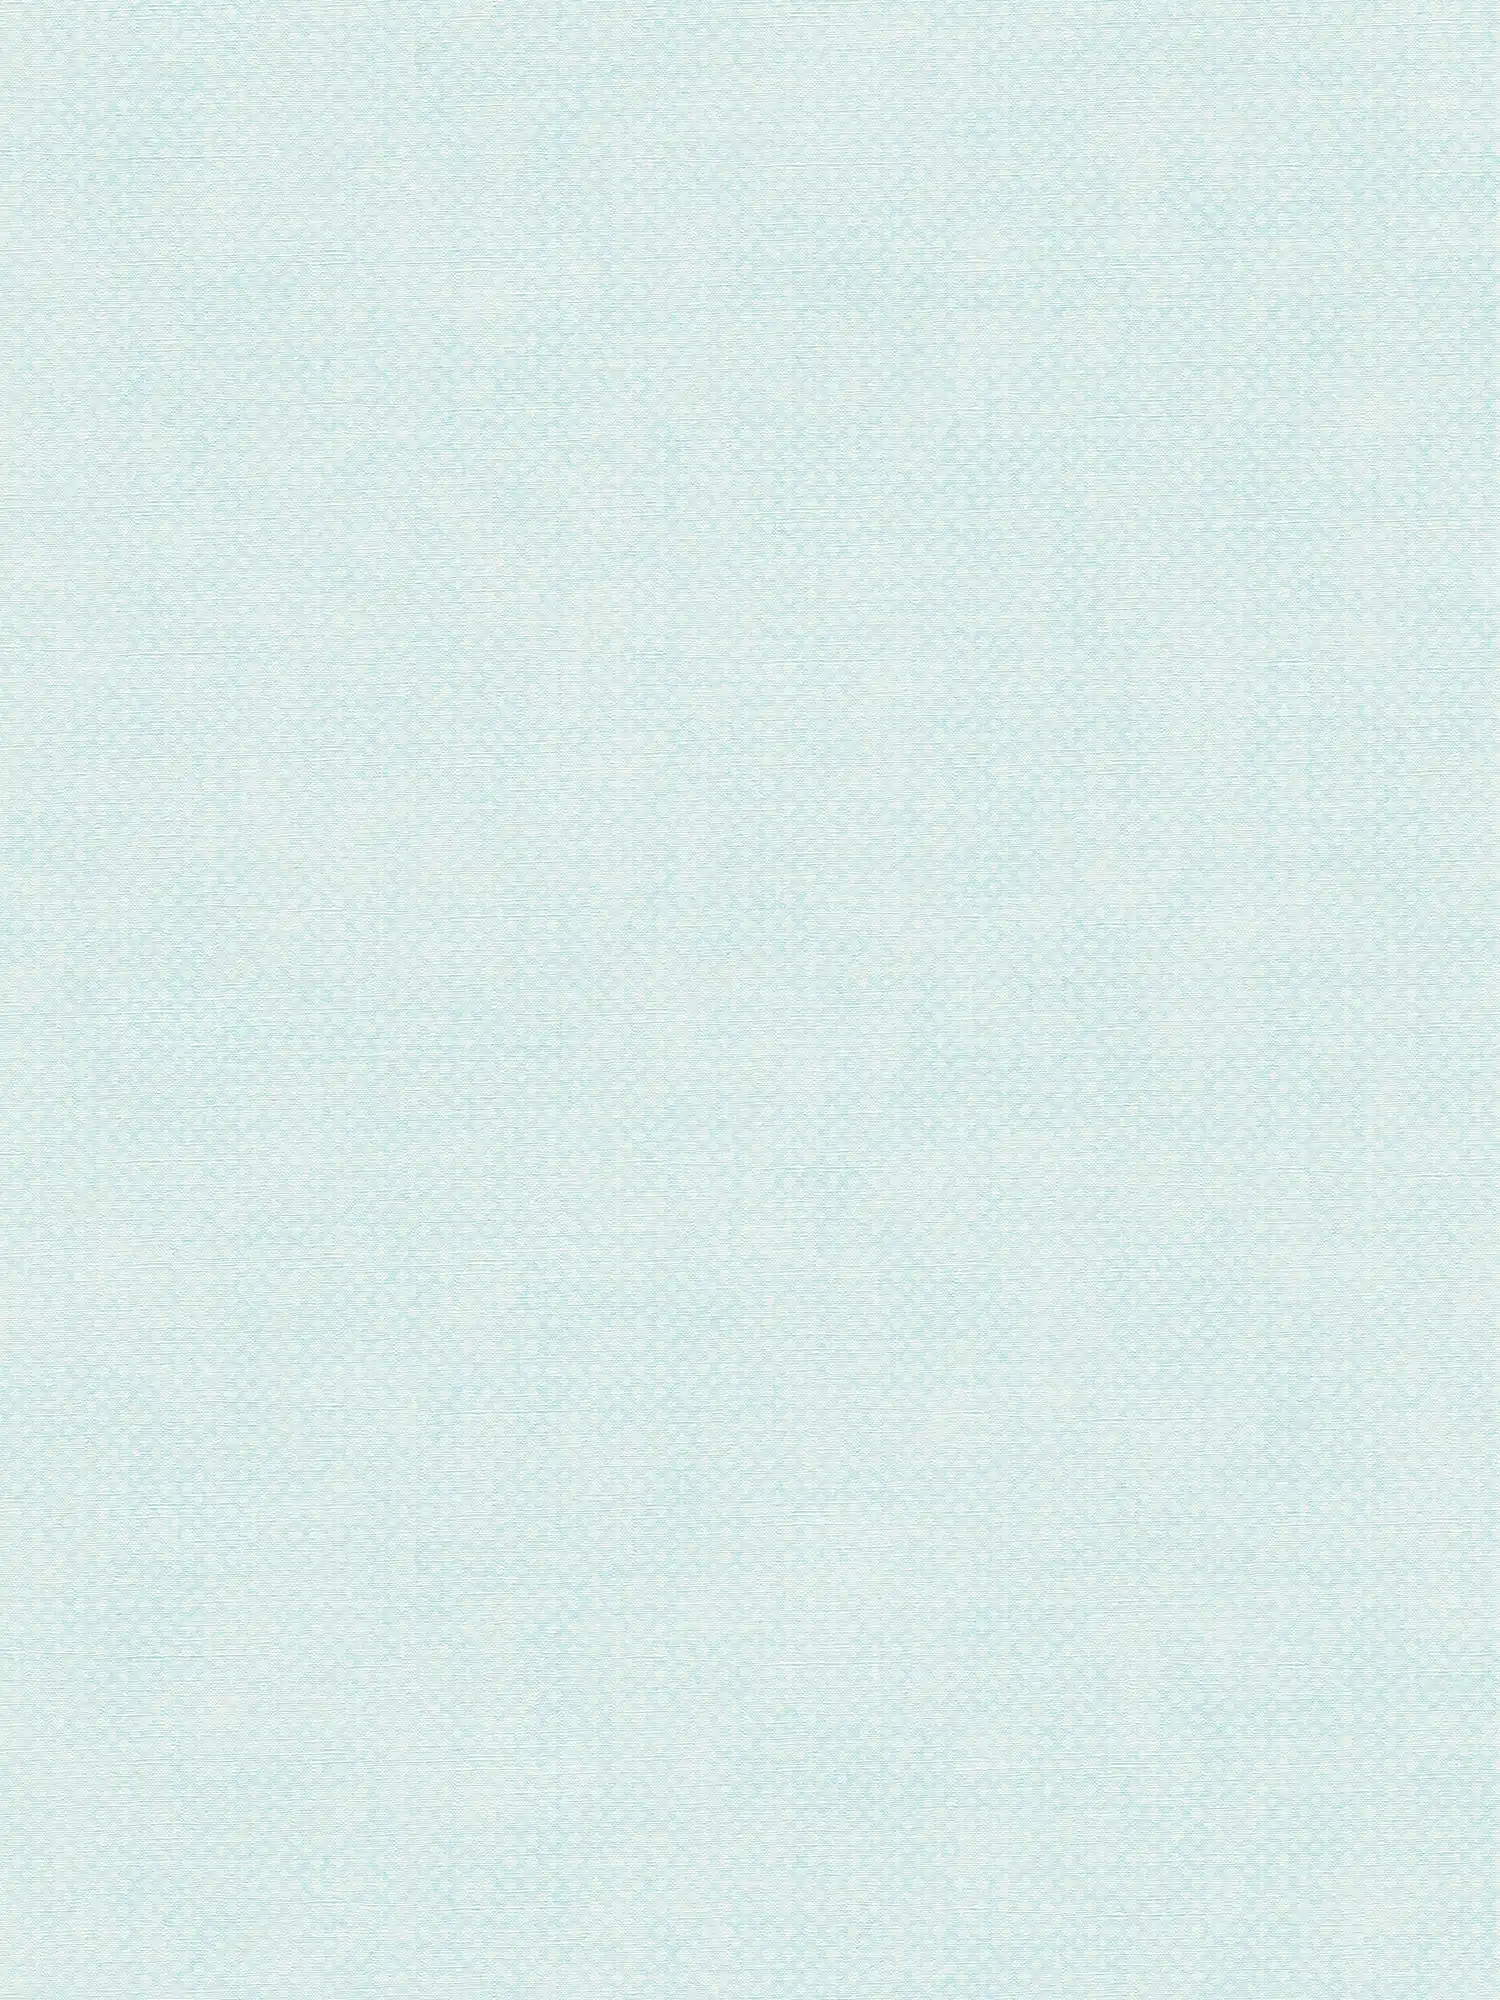 Vliestapete mit feinem Strukturmuster – Blau, Weiß
